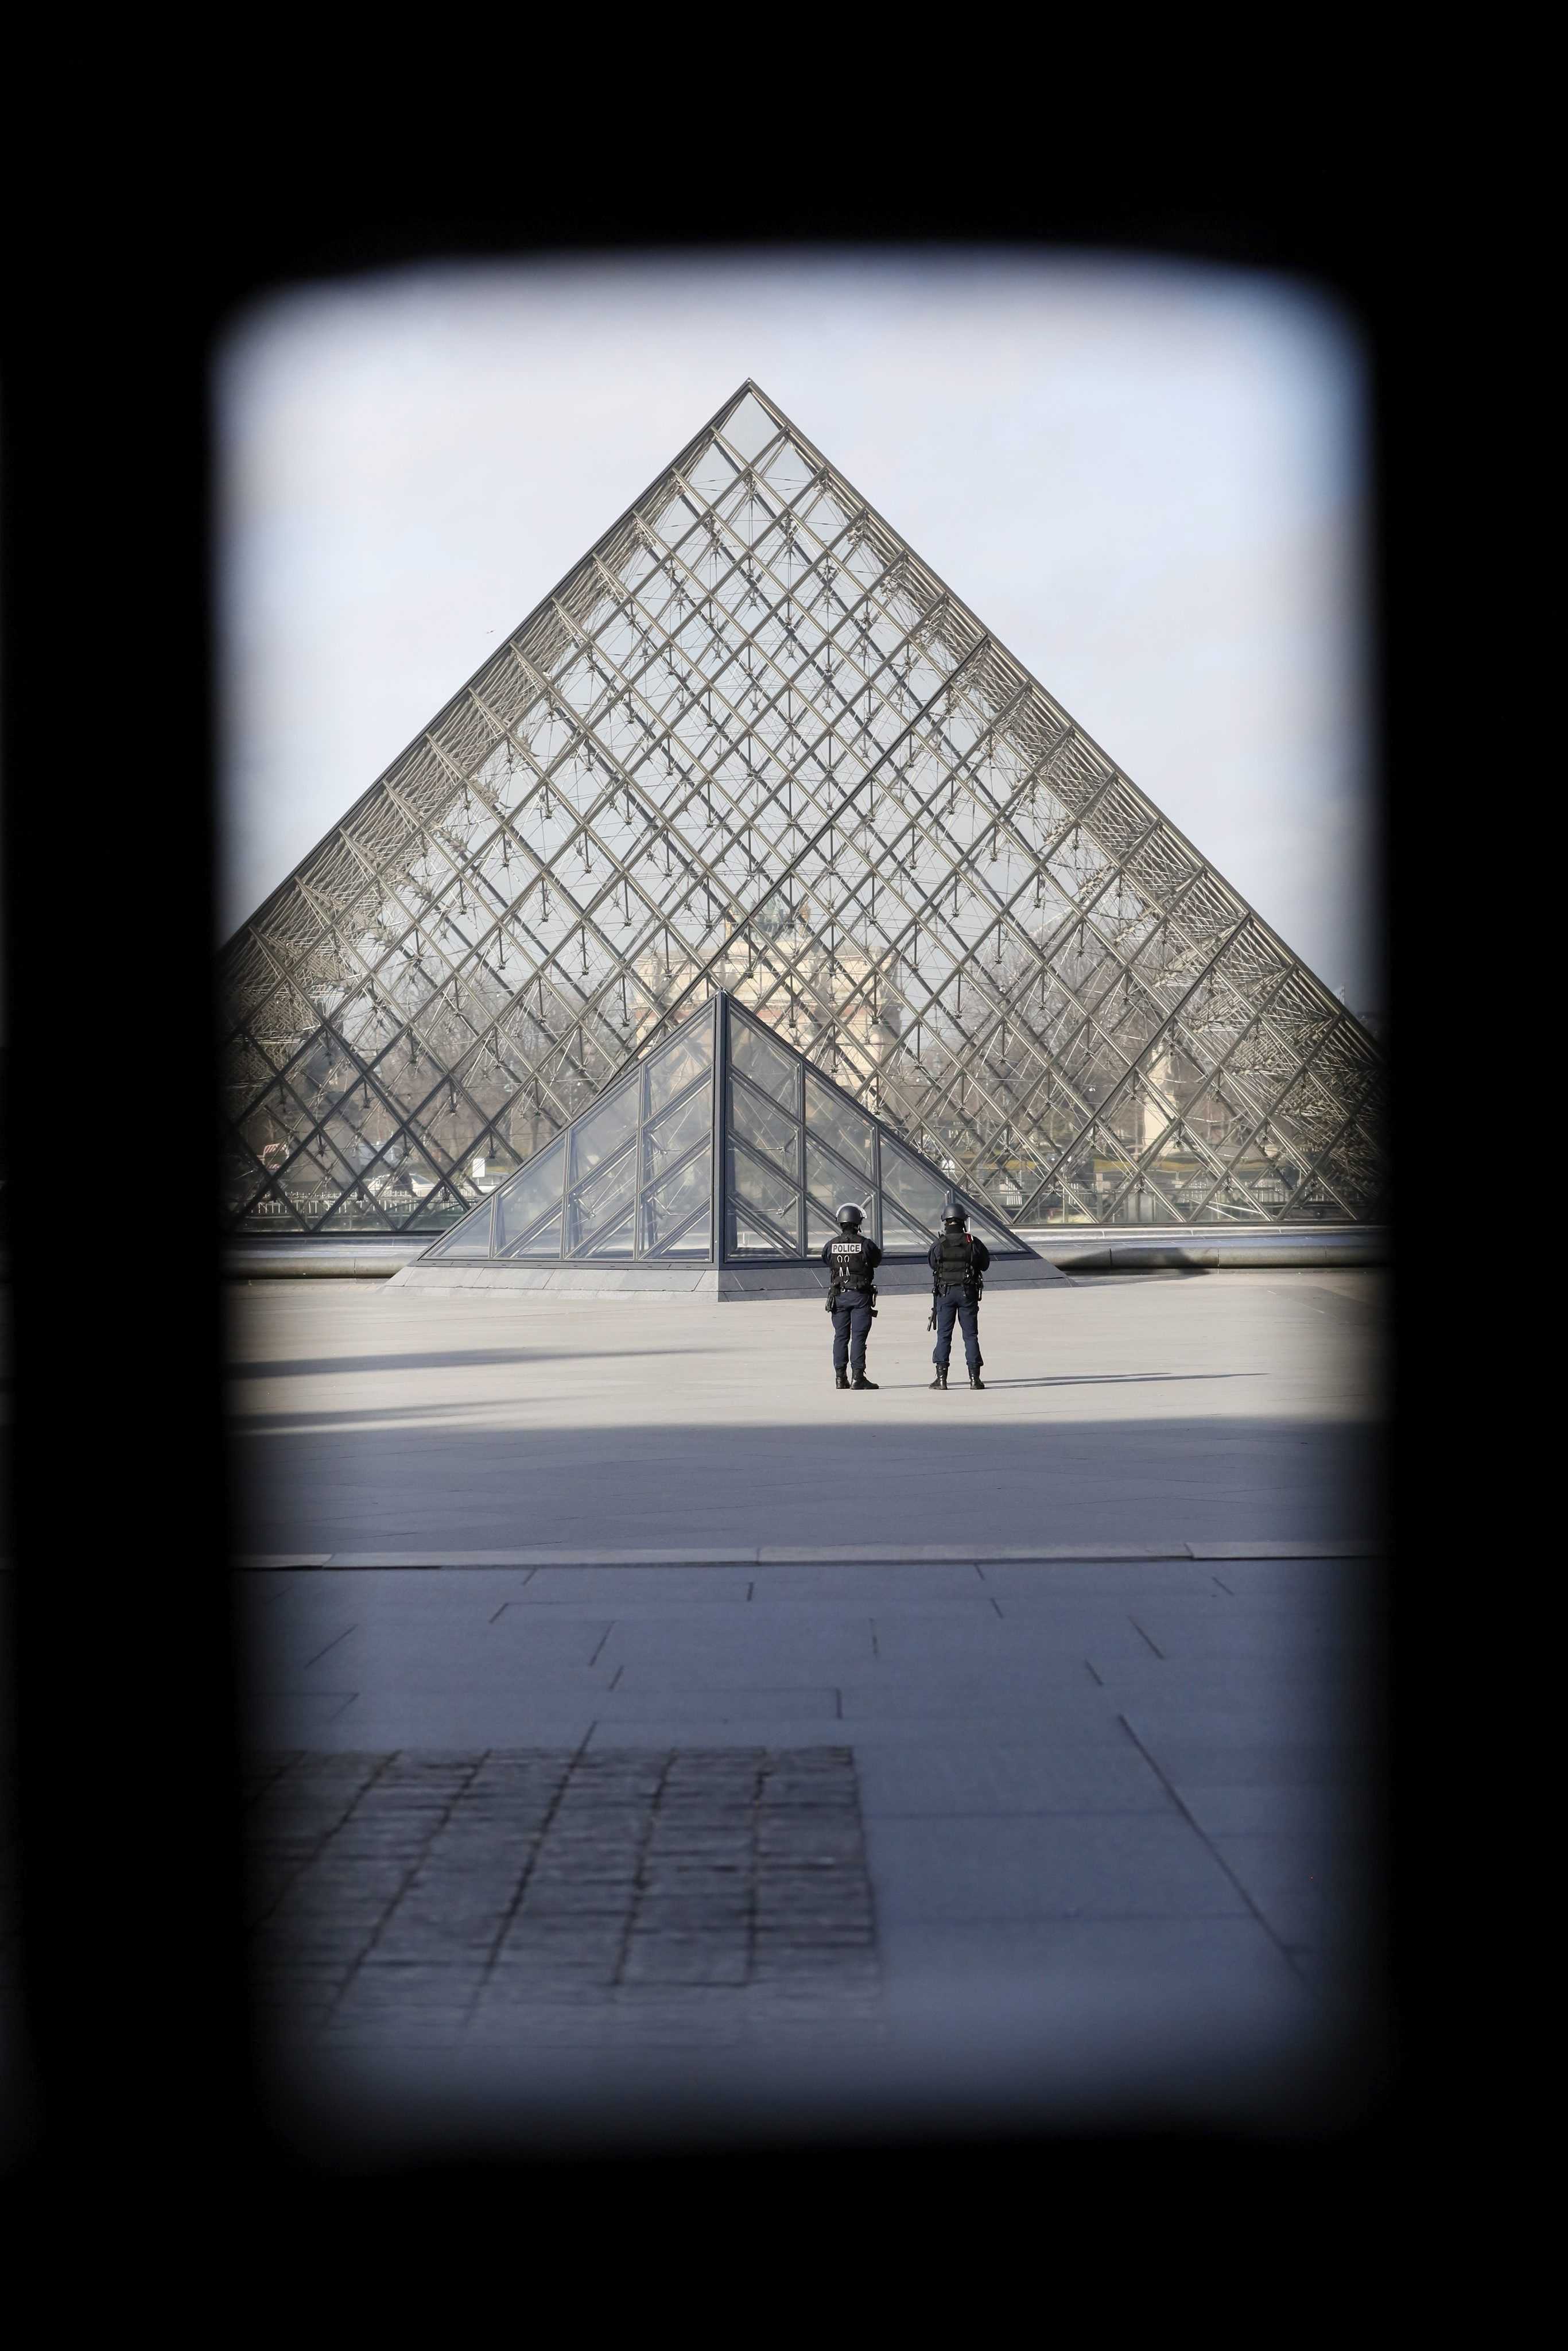 Disparos en París: un hombre perpetra un atentado en el Louvre